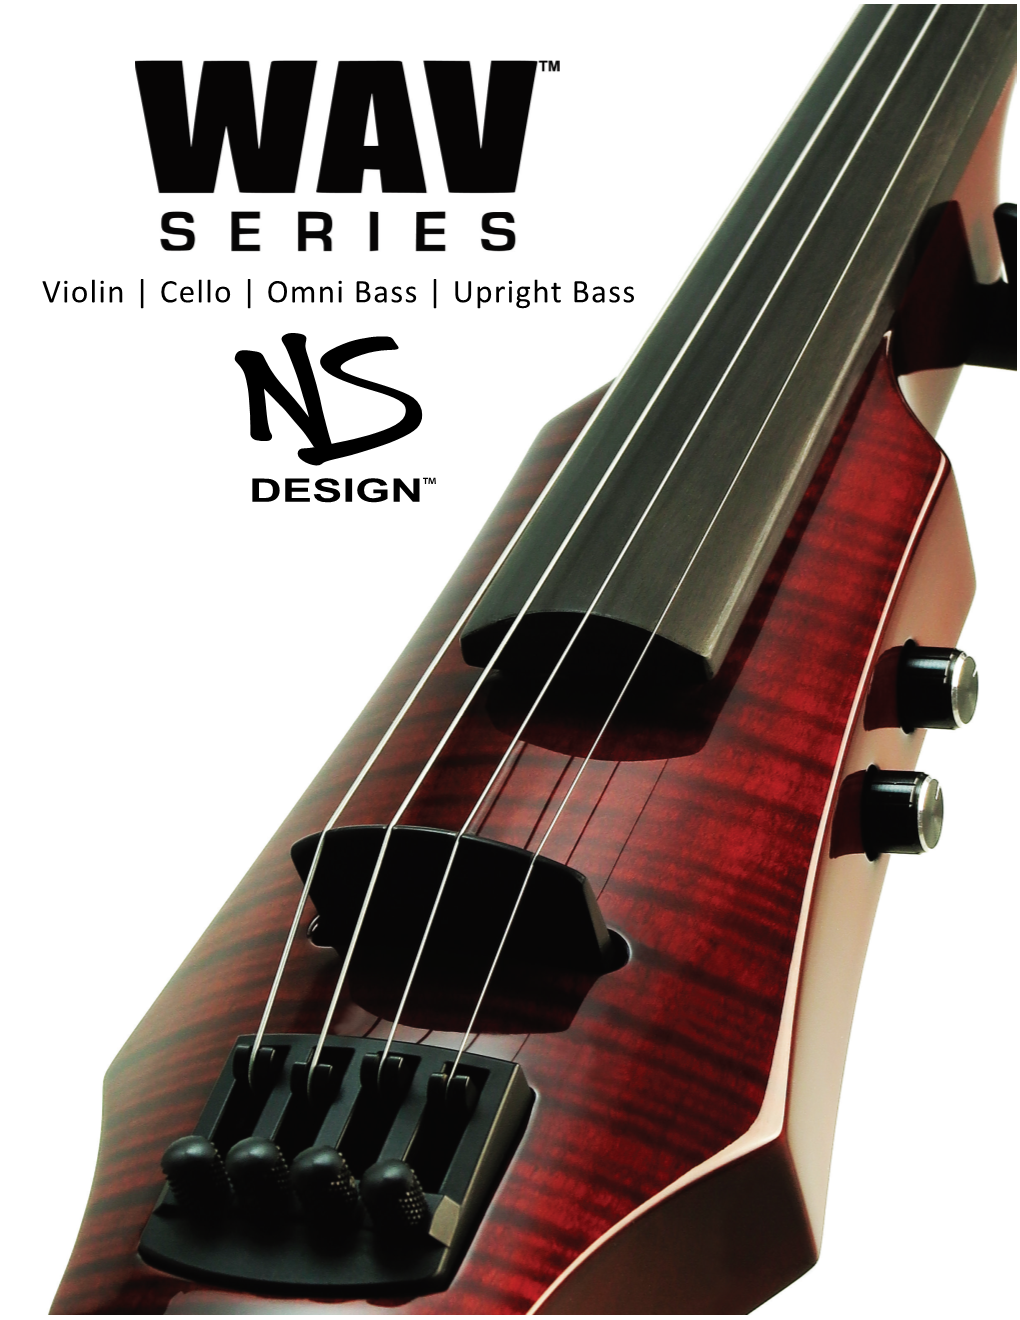 Violin | Cello | Omni Bass | Upright Bass